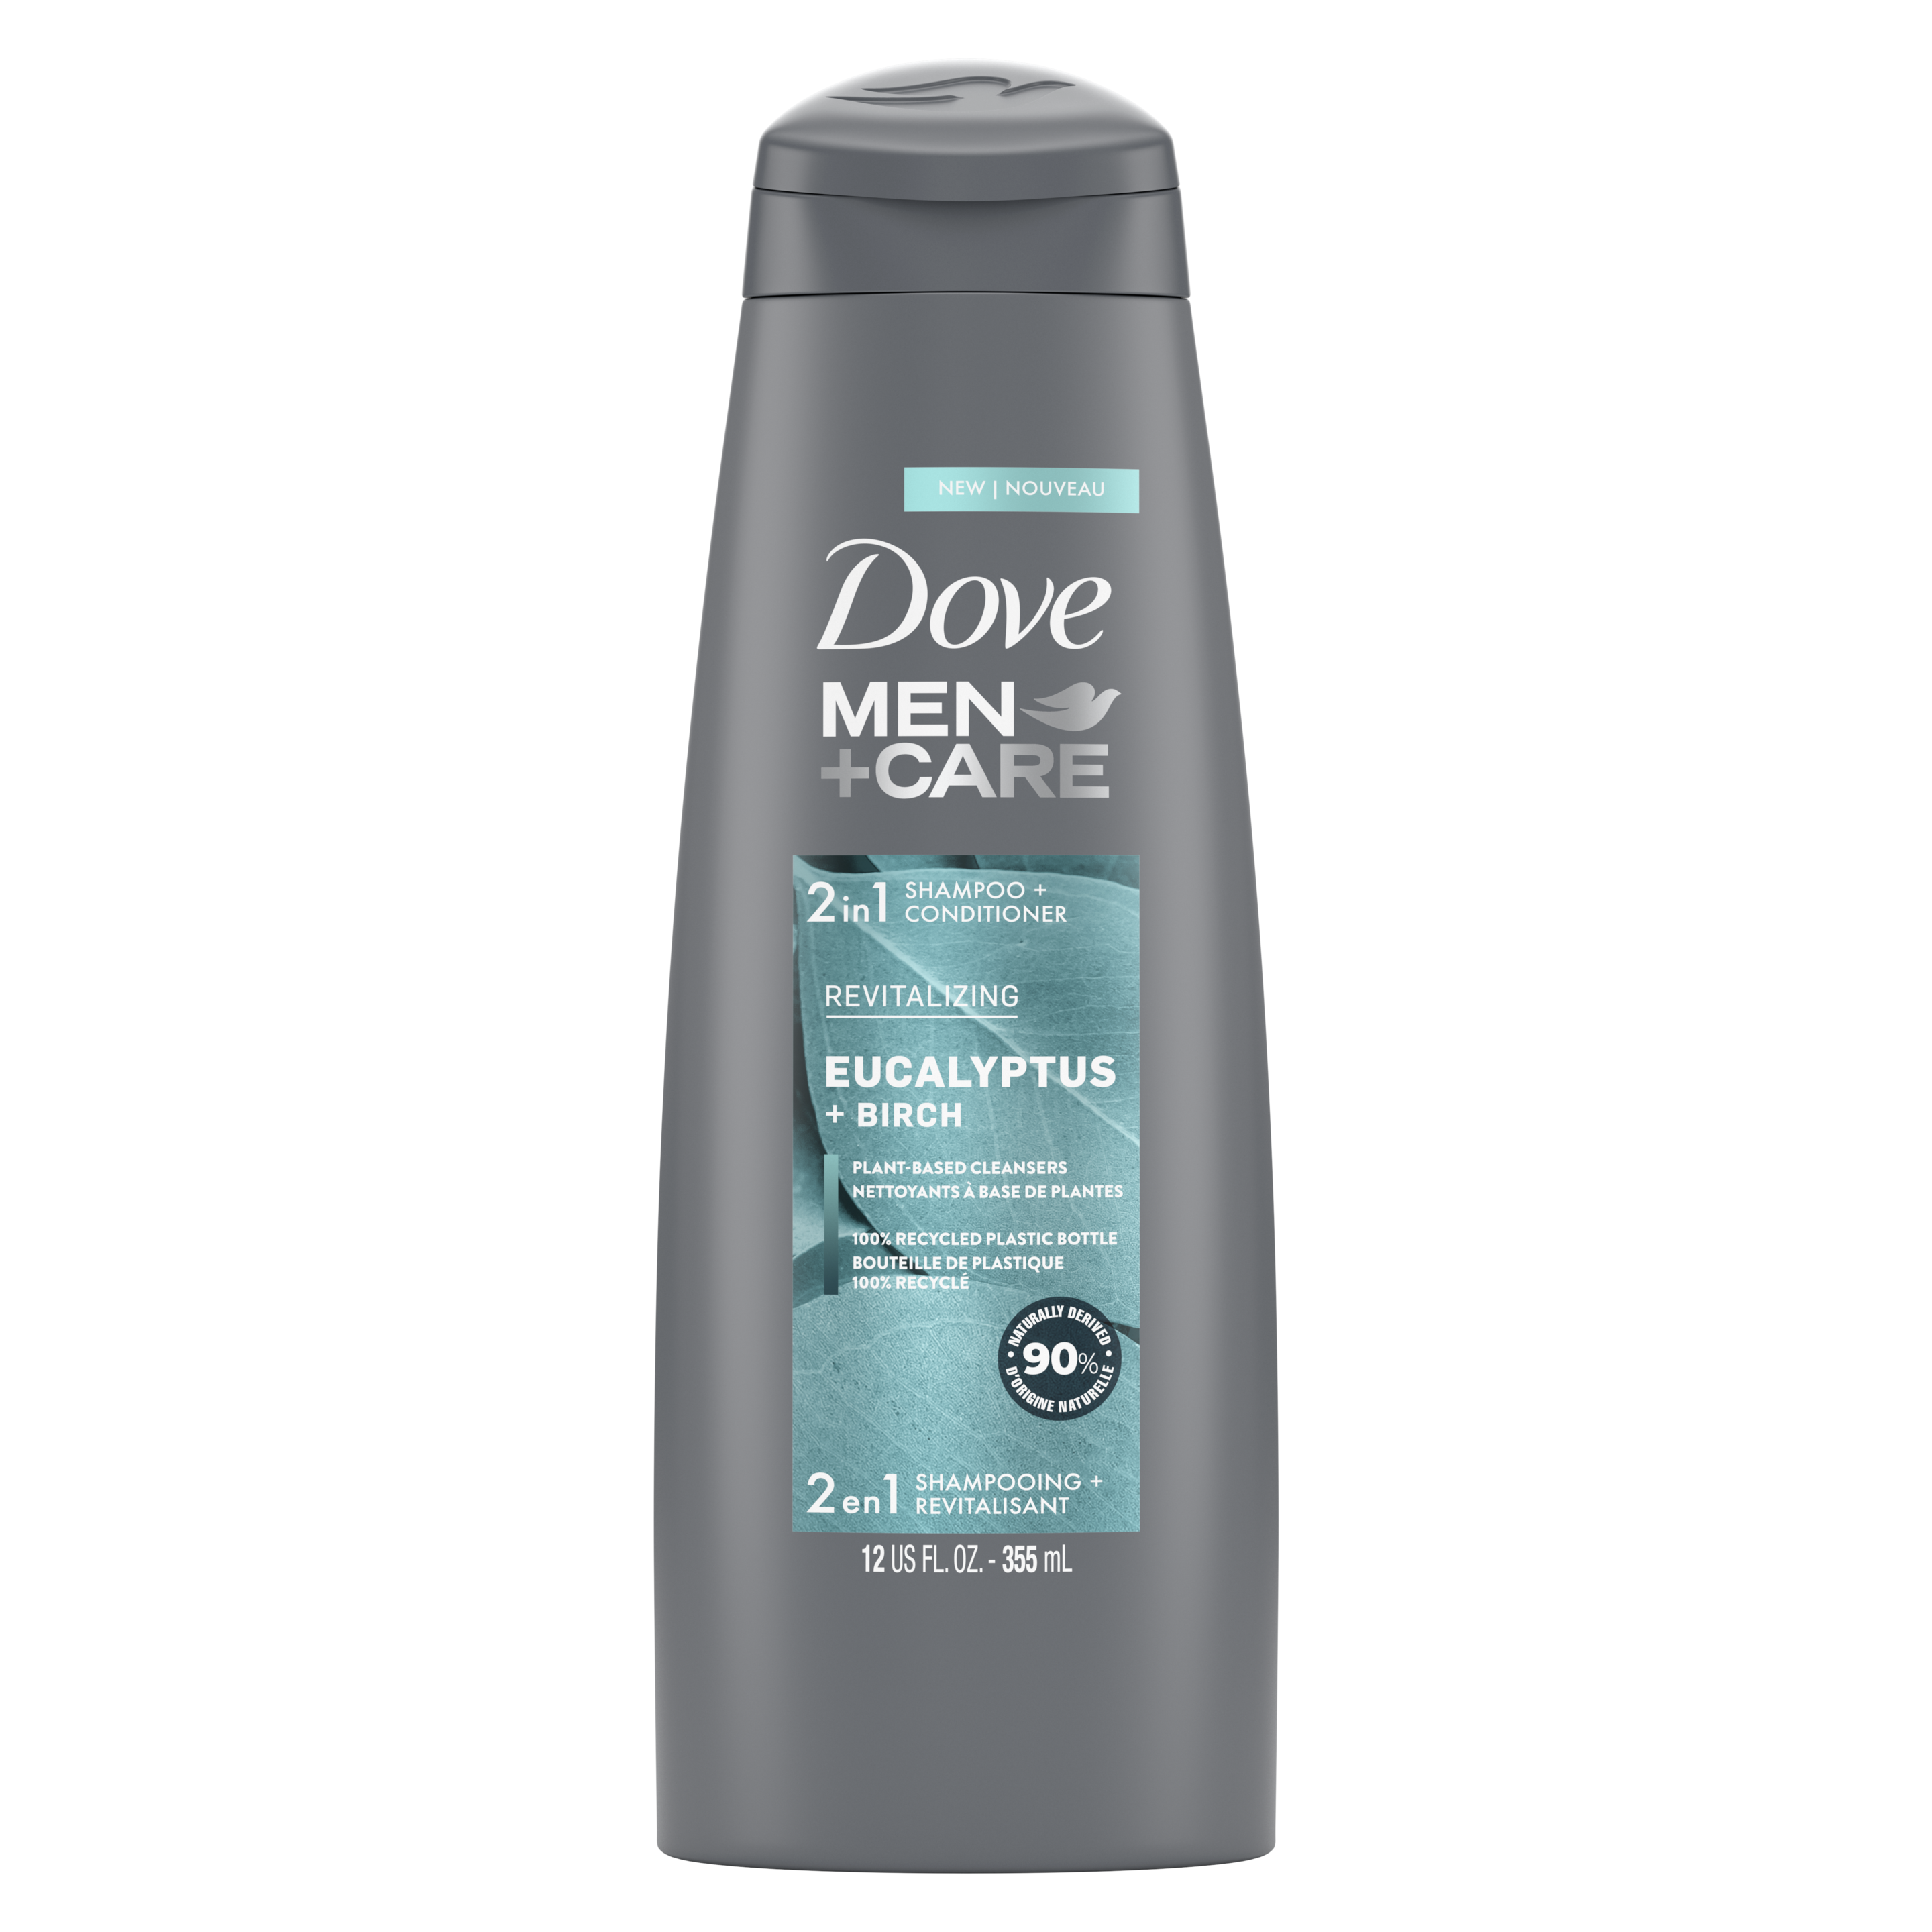 Étiquette de front du shampooing + revitalisant 2 en 1 Dove Men+Care Eucalyptus + Birch 12 oz